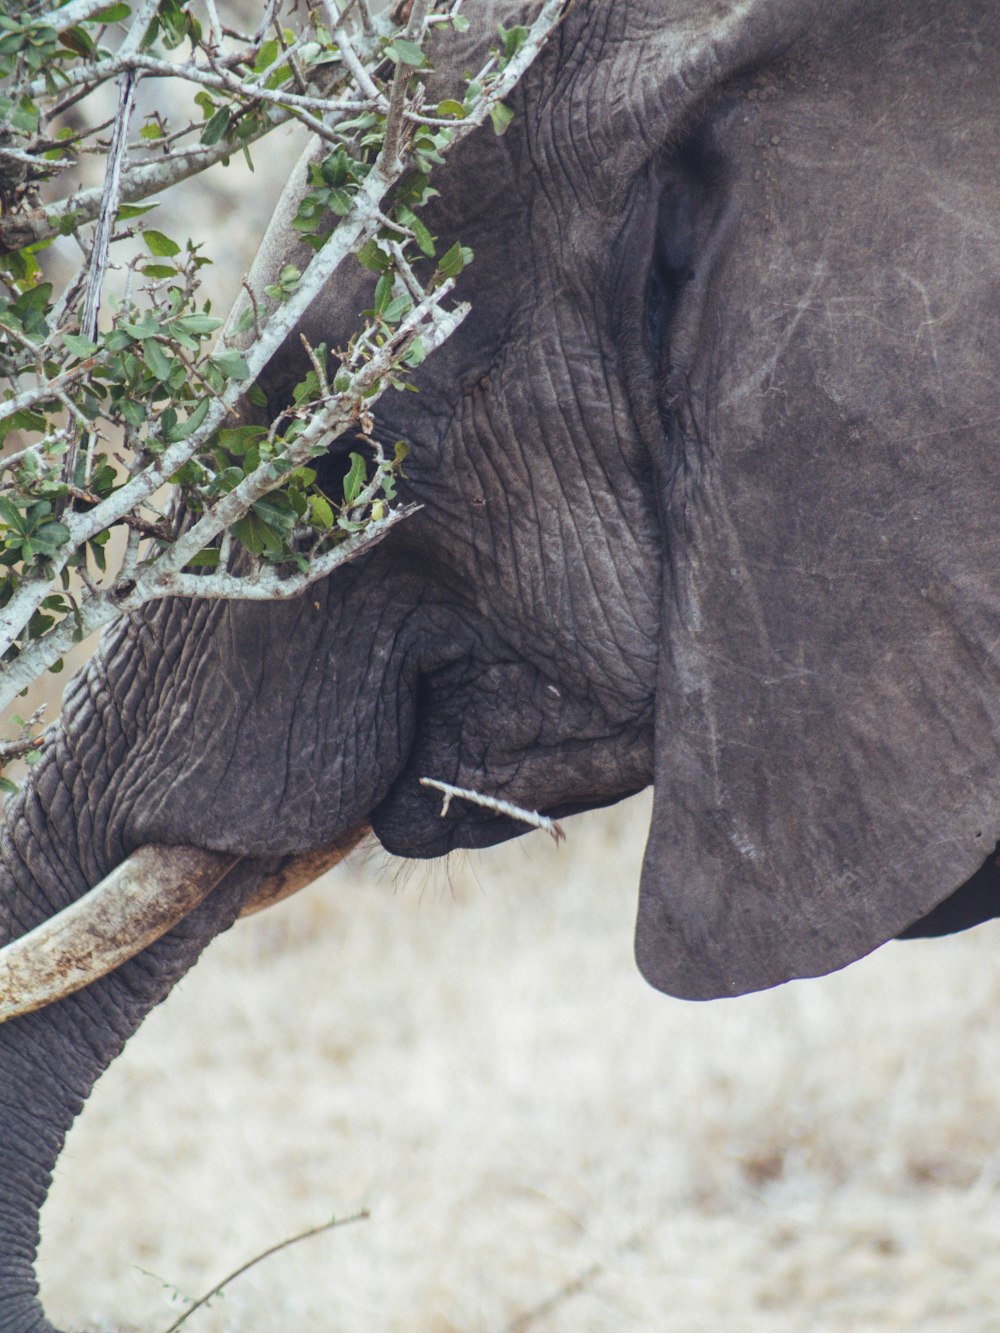 um elefante comendo folhas